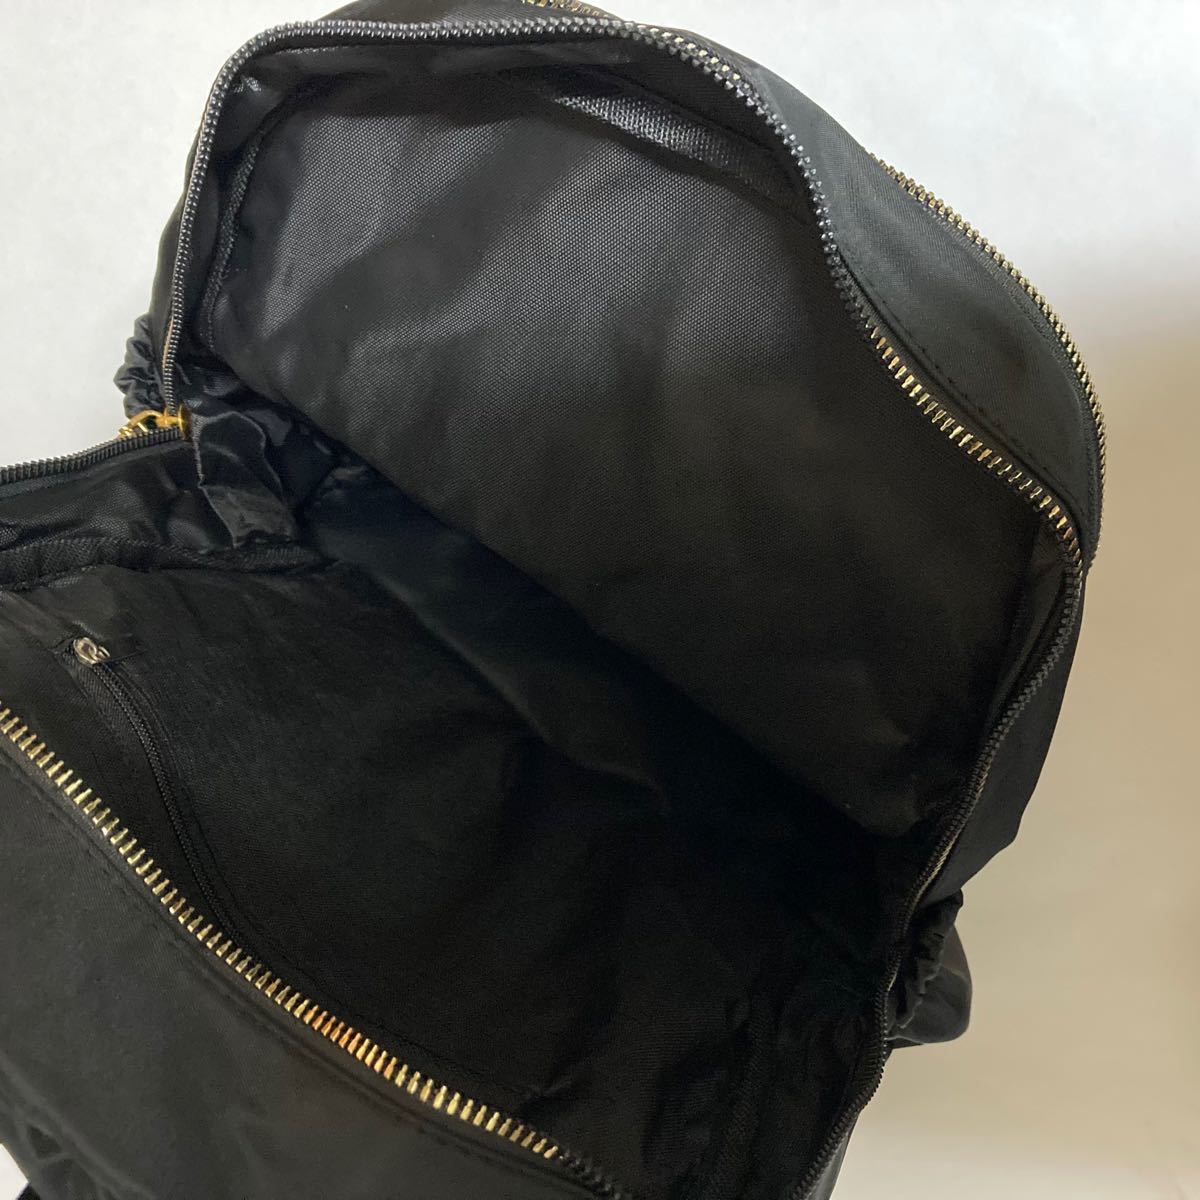 レディース リュック マザーズバッグ バックパック カバン 大容量 a4 韓国 デイバッグ